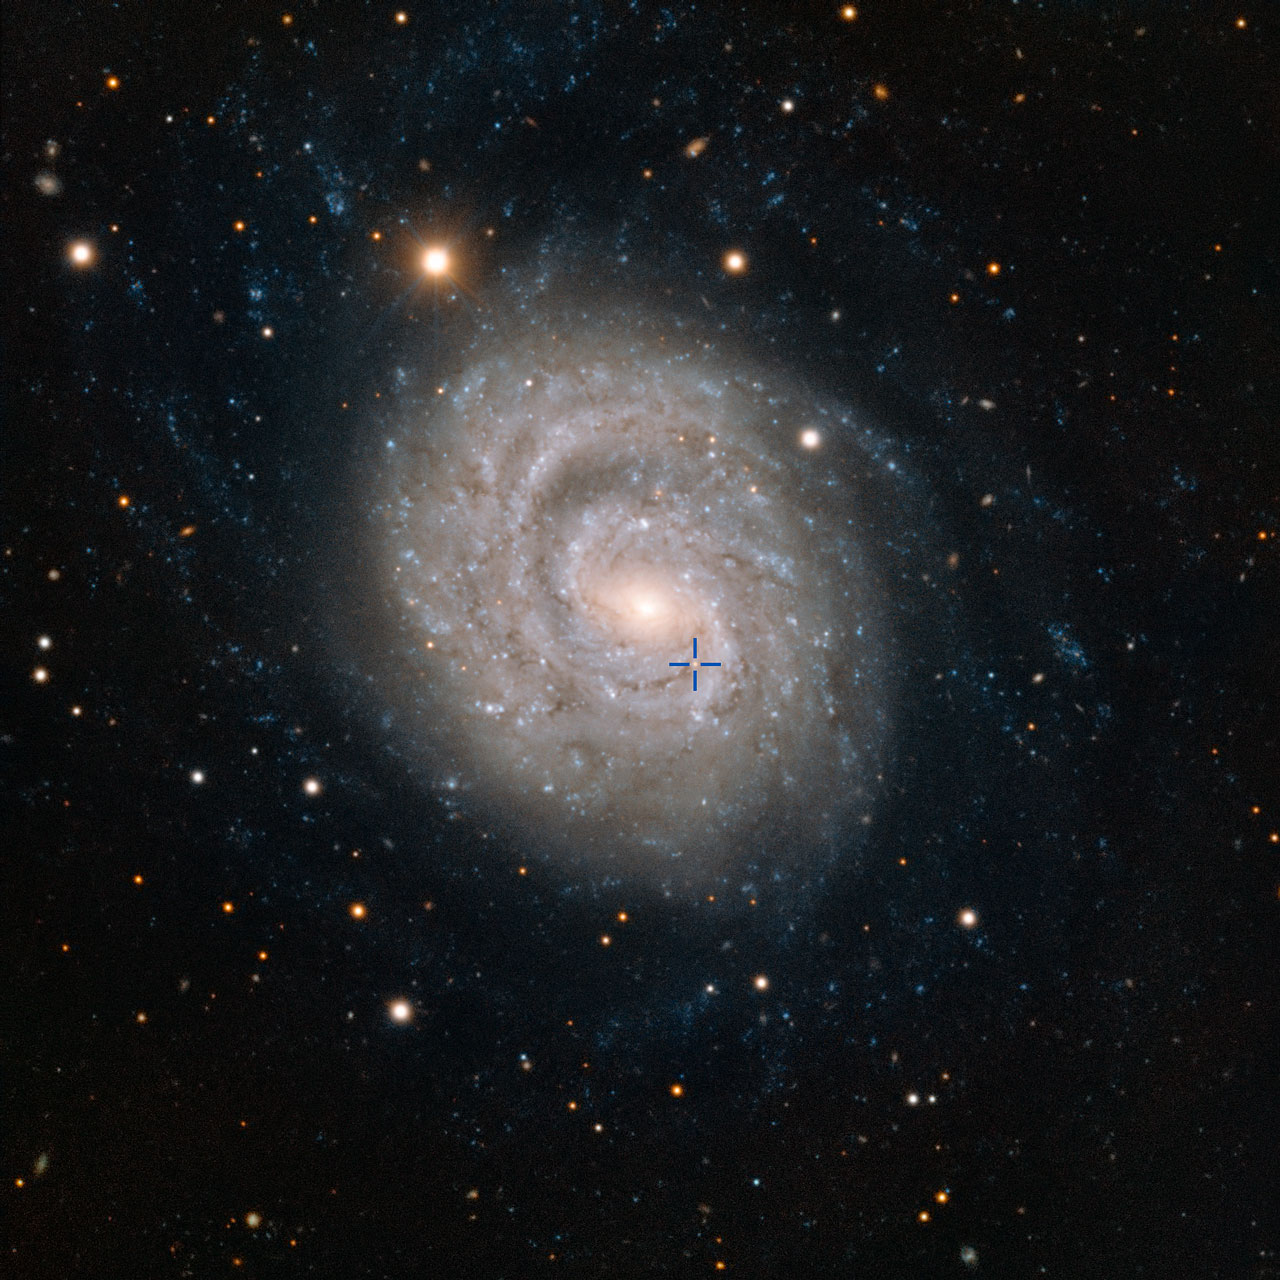 Cette image acquise par le Very Large Telescope de l'ESO à l'observatoire de Paranal au Chili montre NGC 1637, une galaxie spirale située à environ 35 millions d'années-lumière dans la constellation de l'Éridan (la Rivière). En 1999, les scientifiques ont découvert une supernova de type II dans cette galaxie, et ont suivi son lent déclin en luminosité au fil des années. La position de la supernova est précisée par la croix bleue. © ESO